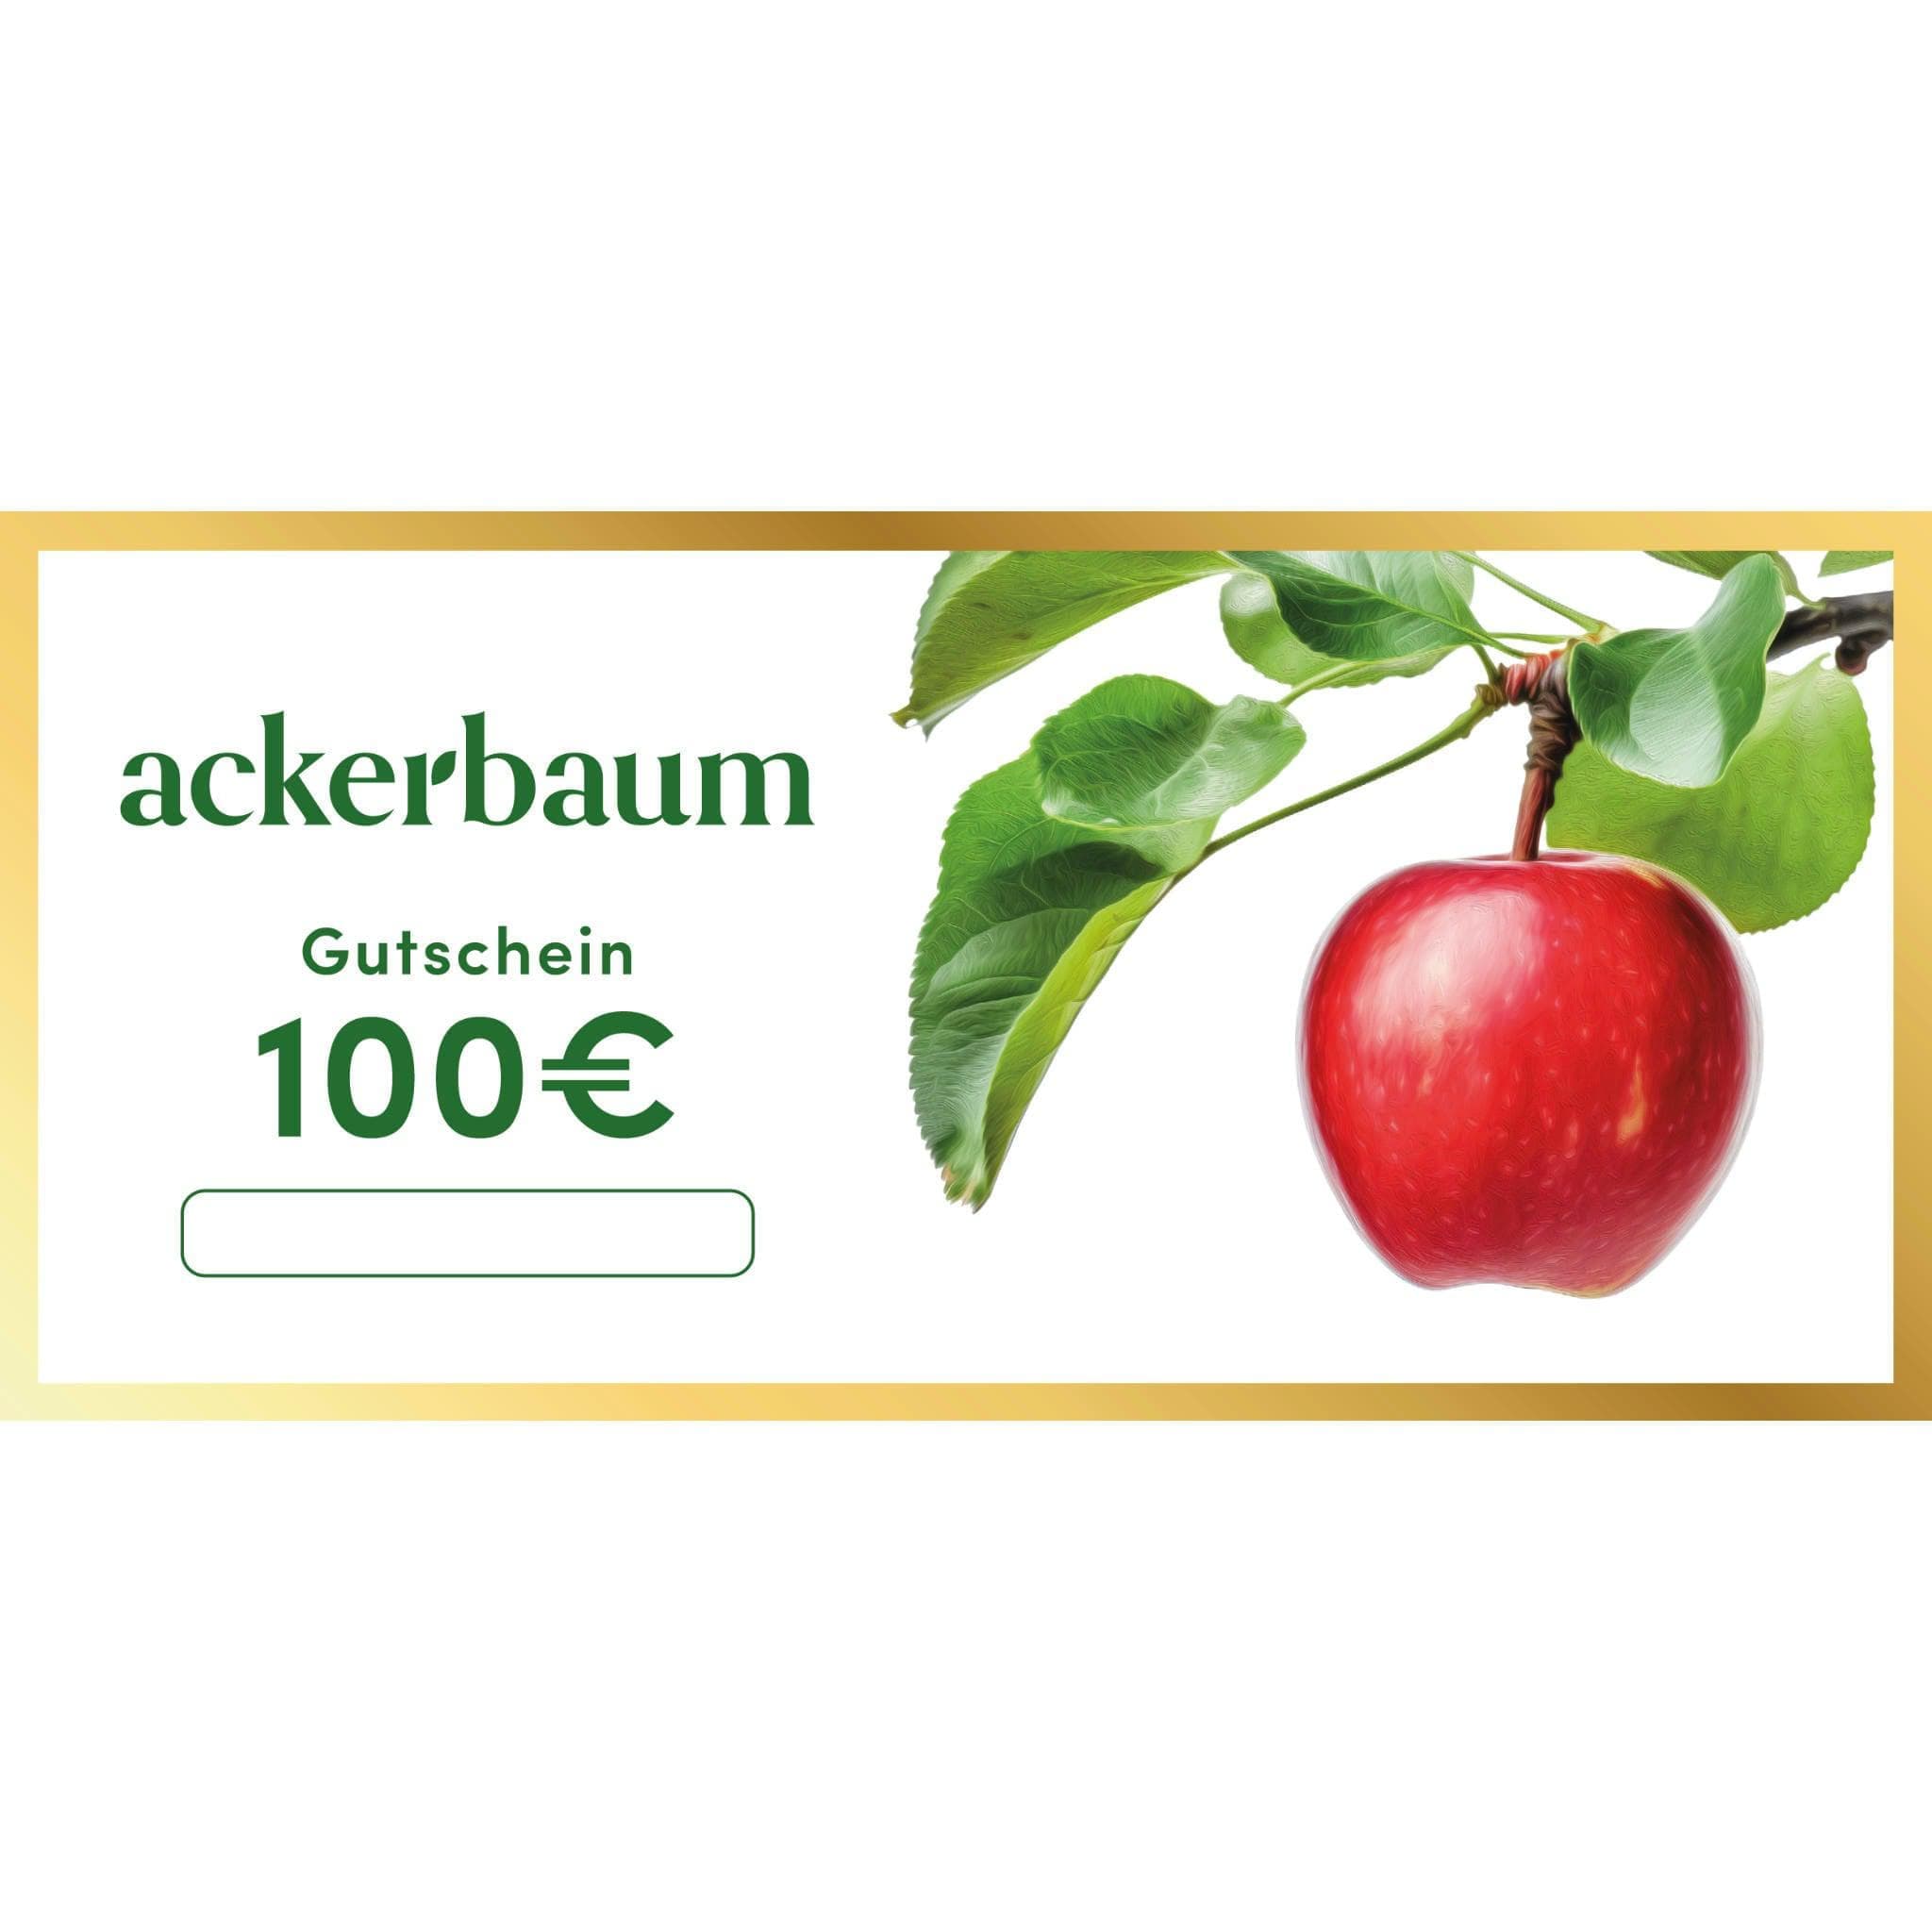 ackerbaum ackerbaum 100 € Weihnachtsgutscheine - Edle Papiergutscheine mit Goldrand kaufen